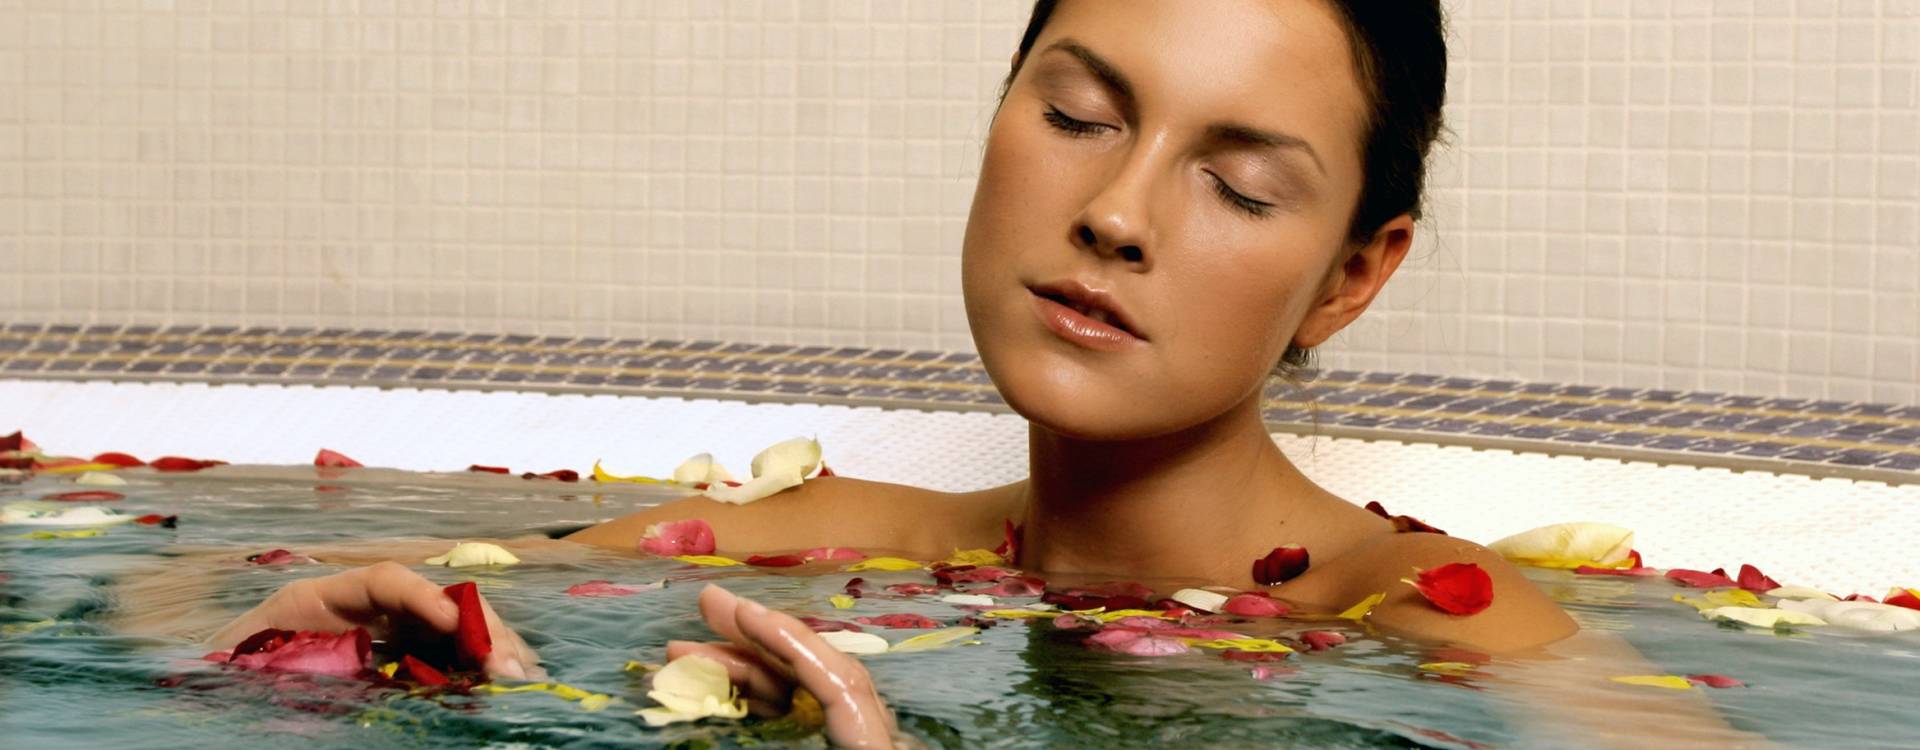 Kúpele Brusno - Relaxační pobyt ve všední dny